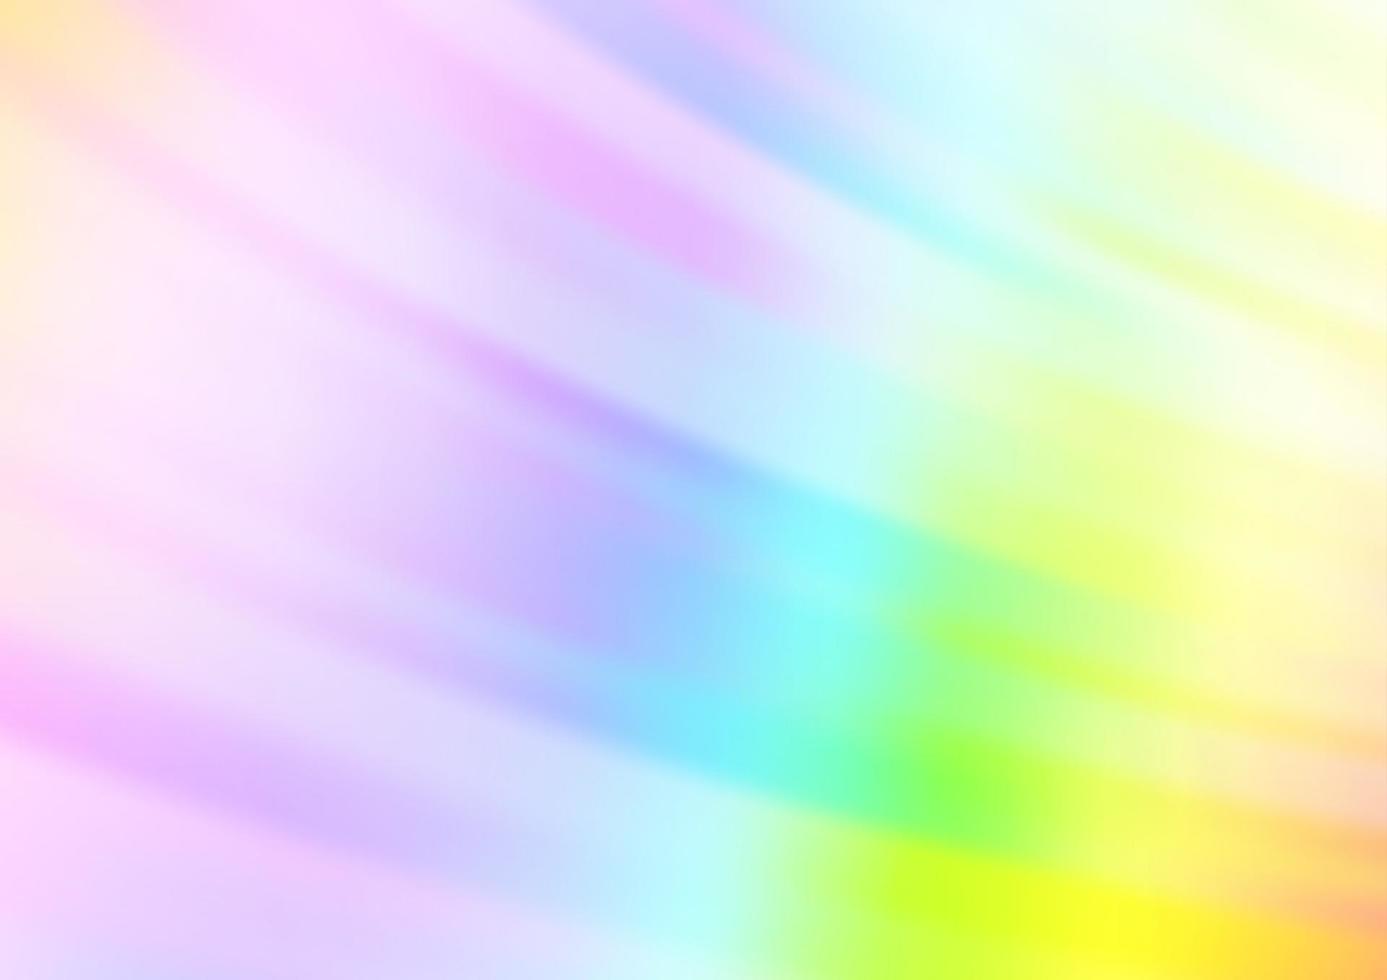 ljus mångfärgad, regnbågsvektormall med upprepade pinnar. vektor